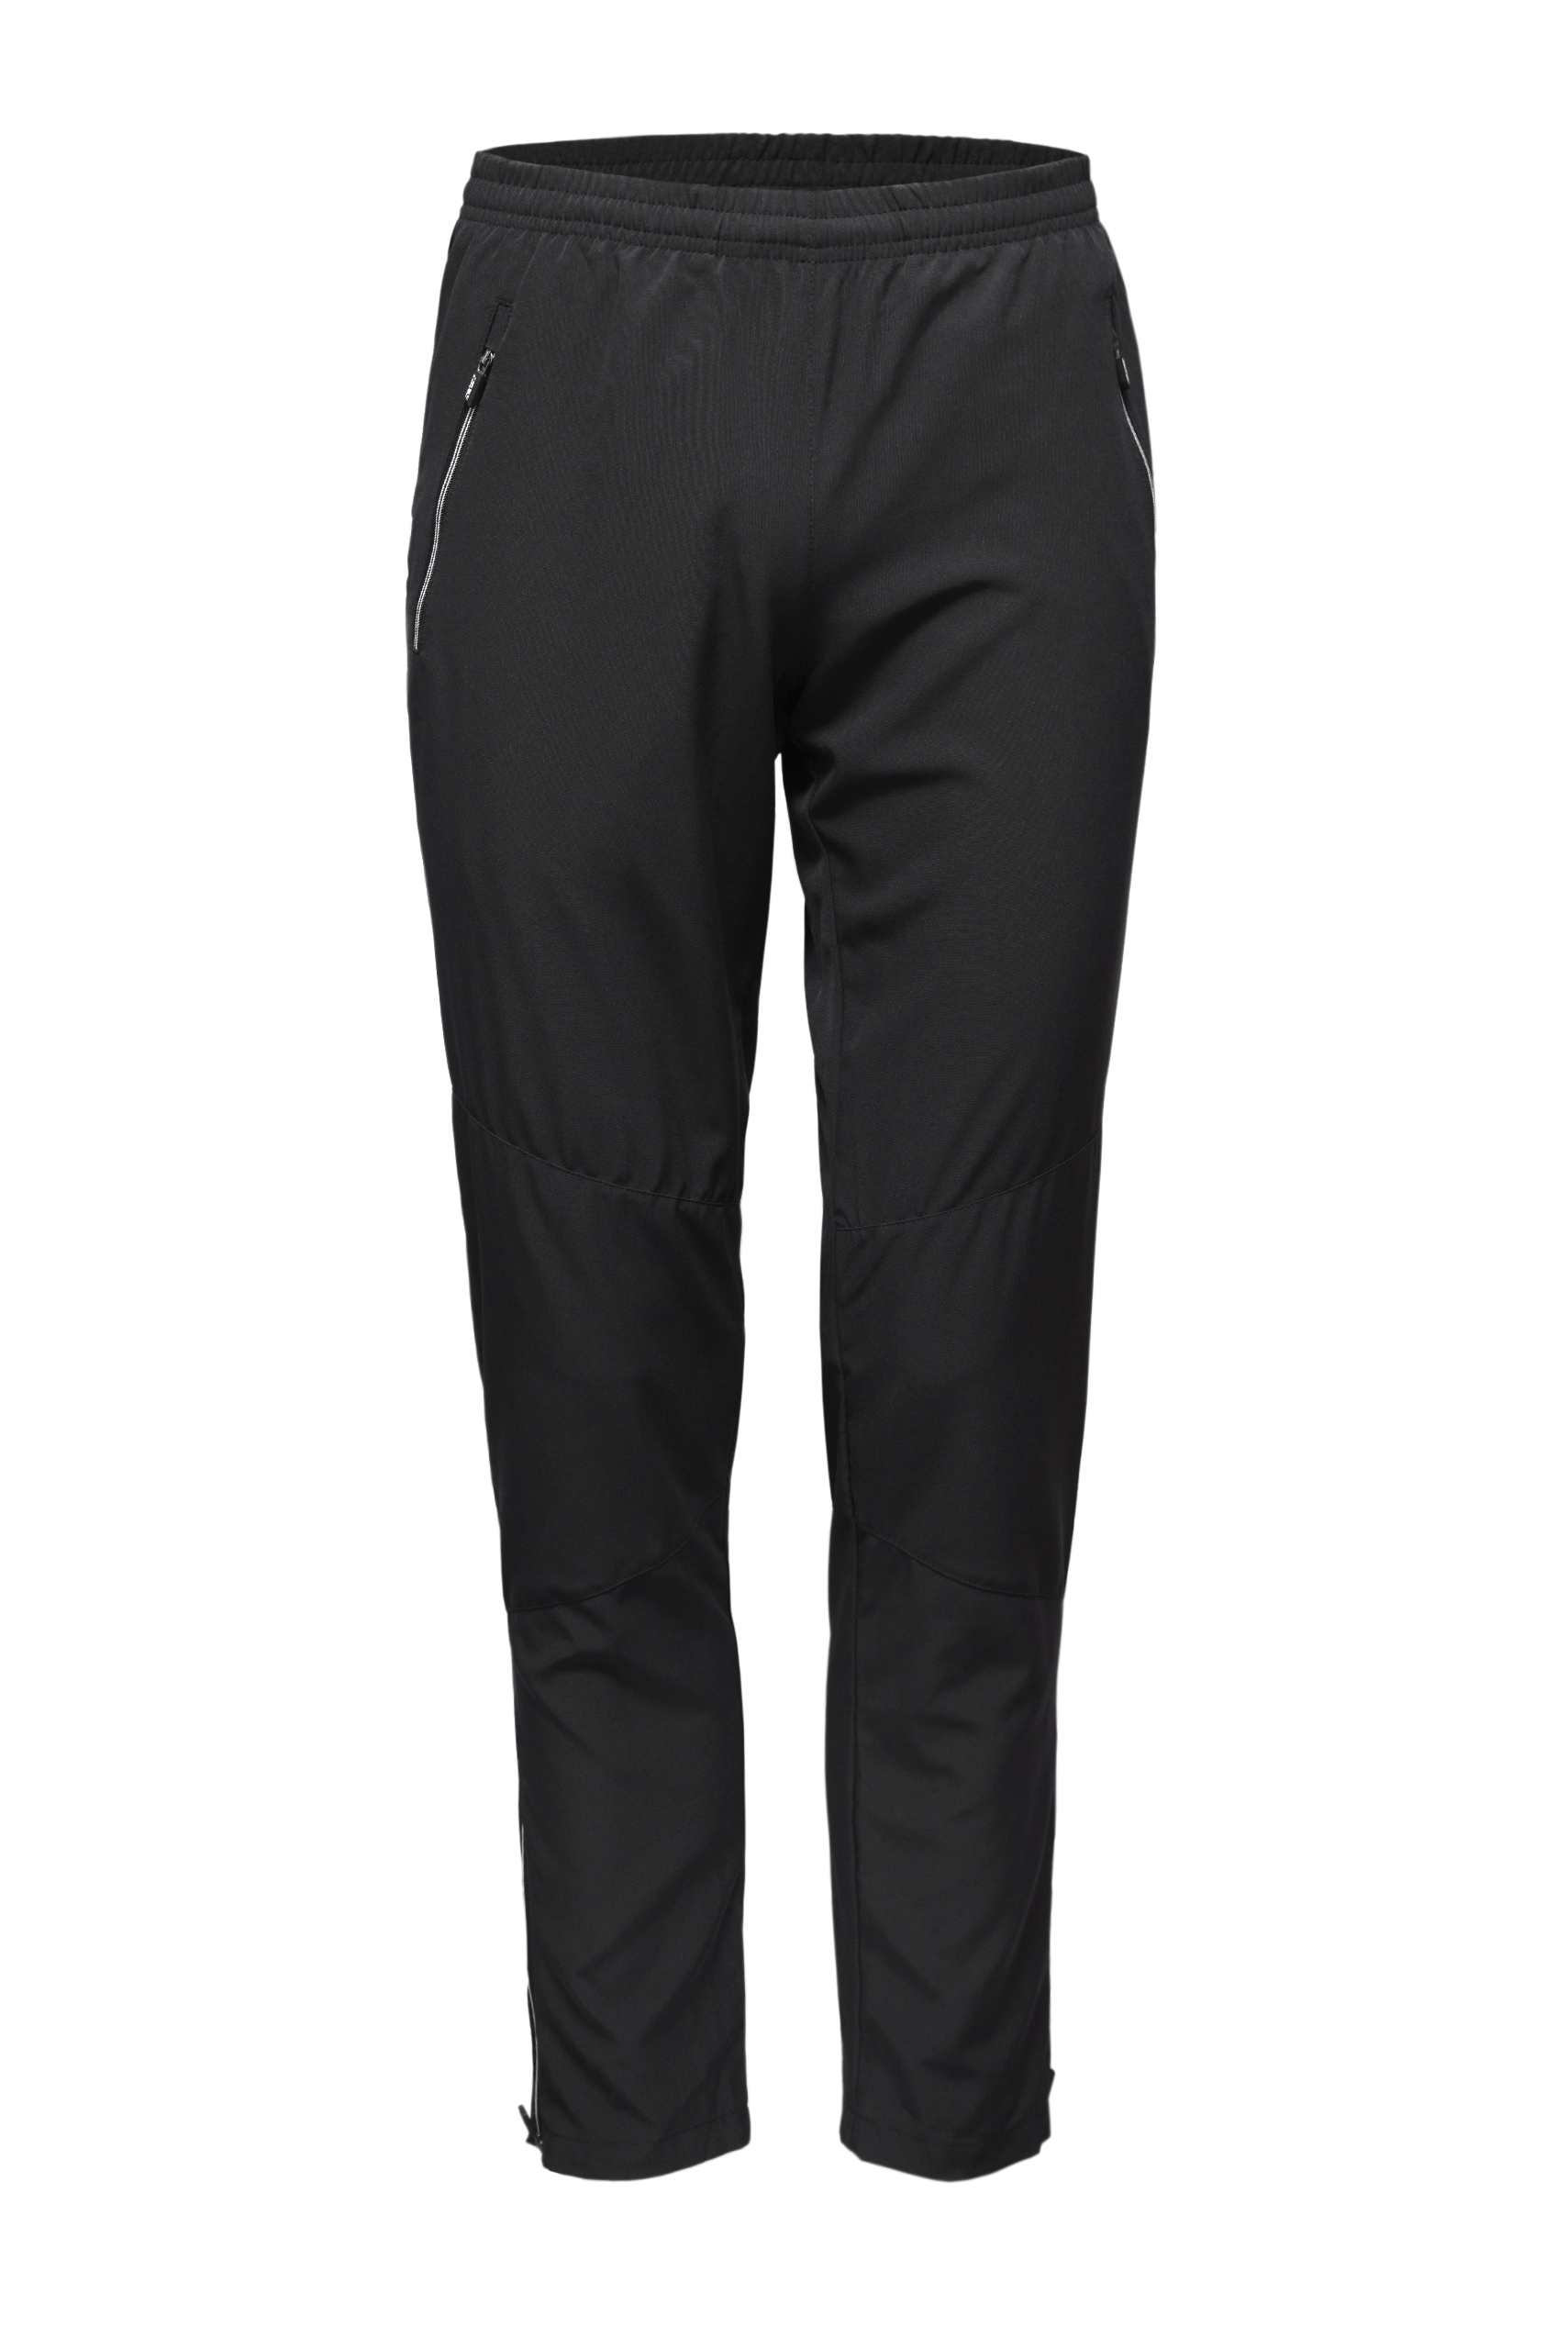 Спортивные брюки мужские KV+ Sprint pants черные 3XL